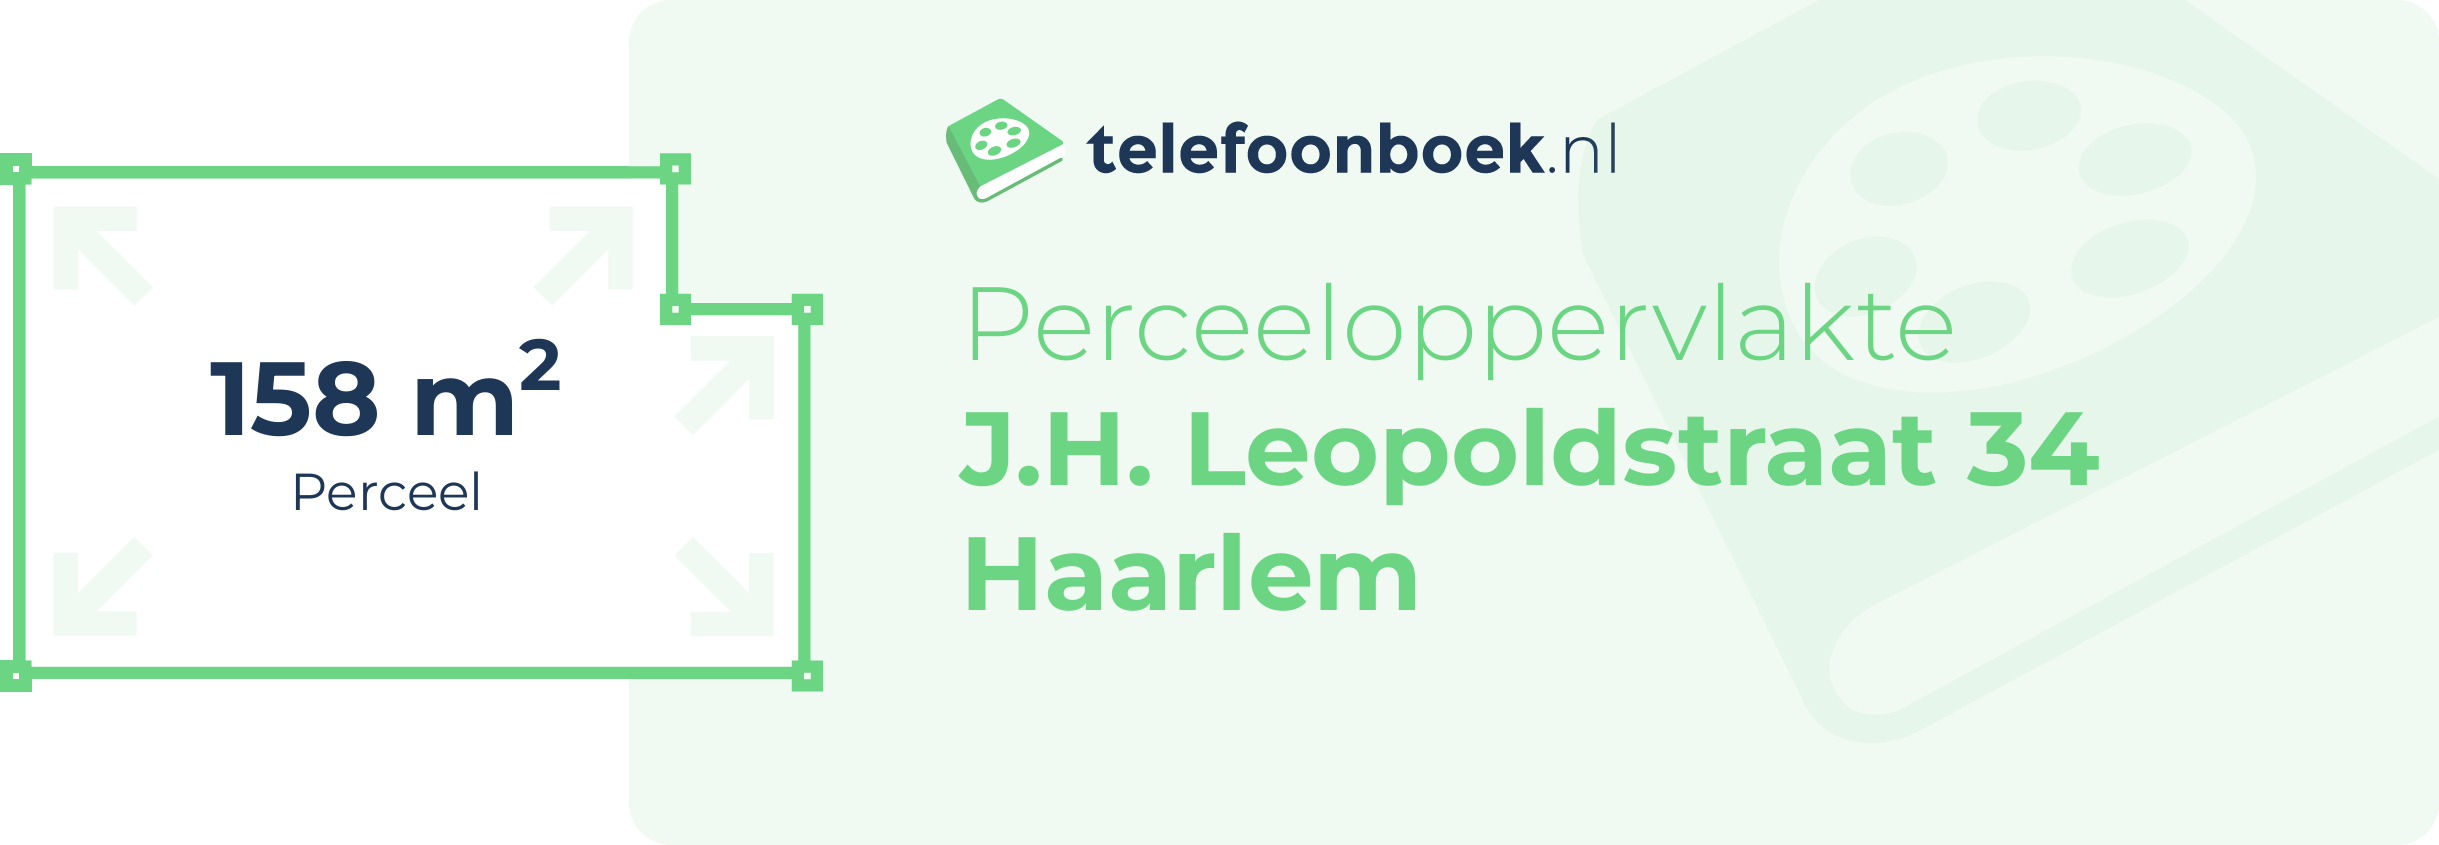 Perceeloppervlakte J.H. Leopoldstraat 34 Haarlem